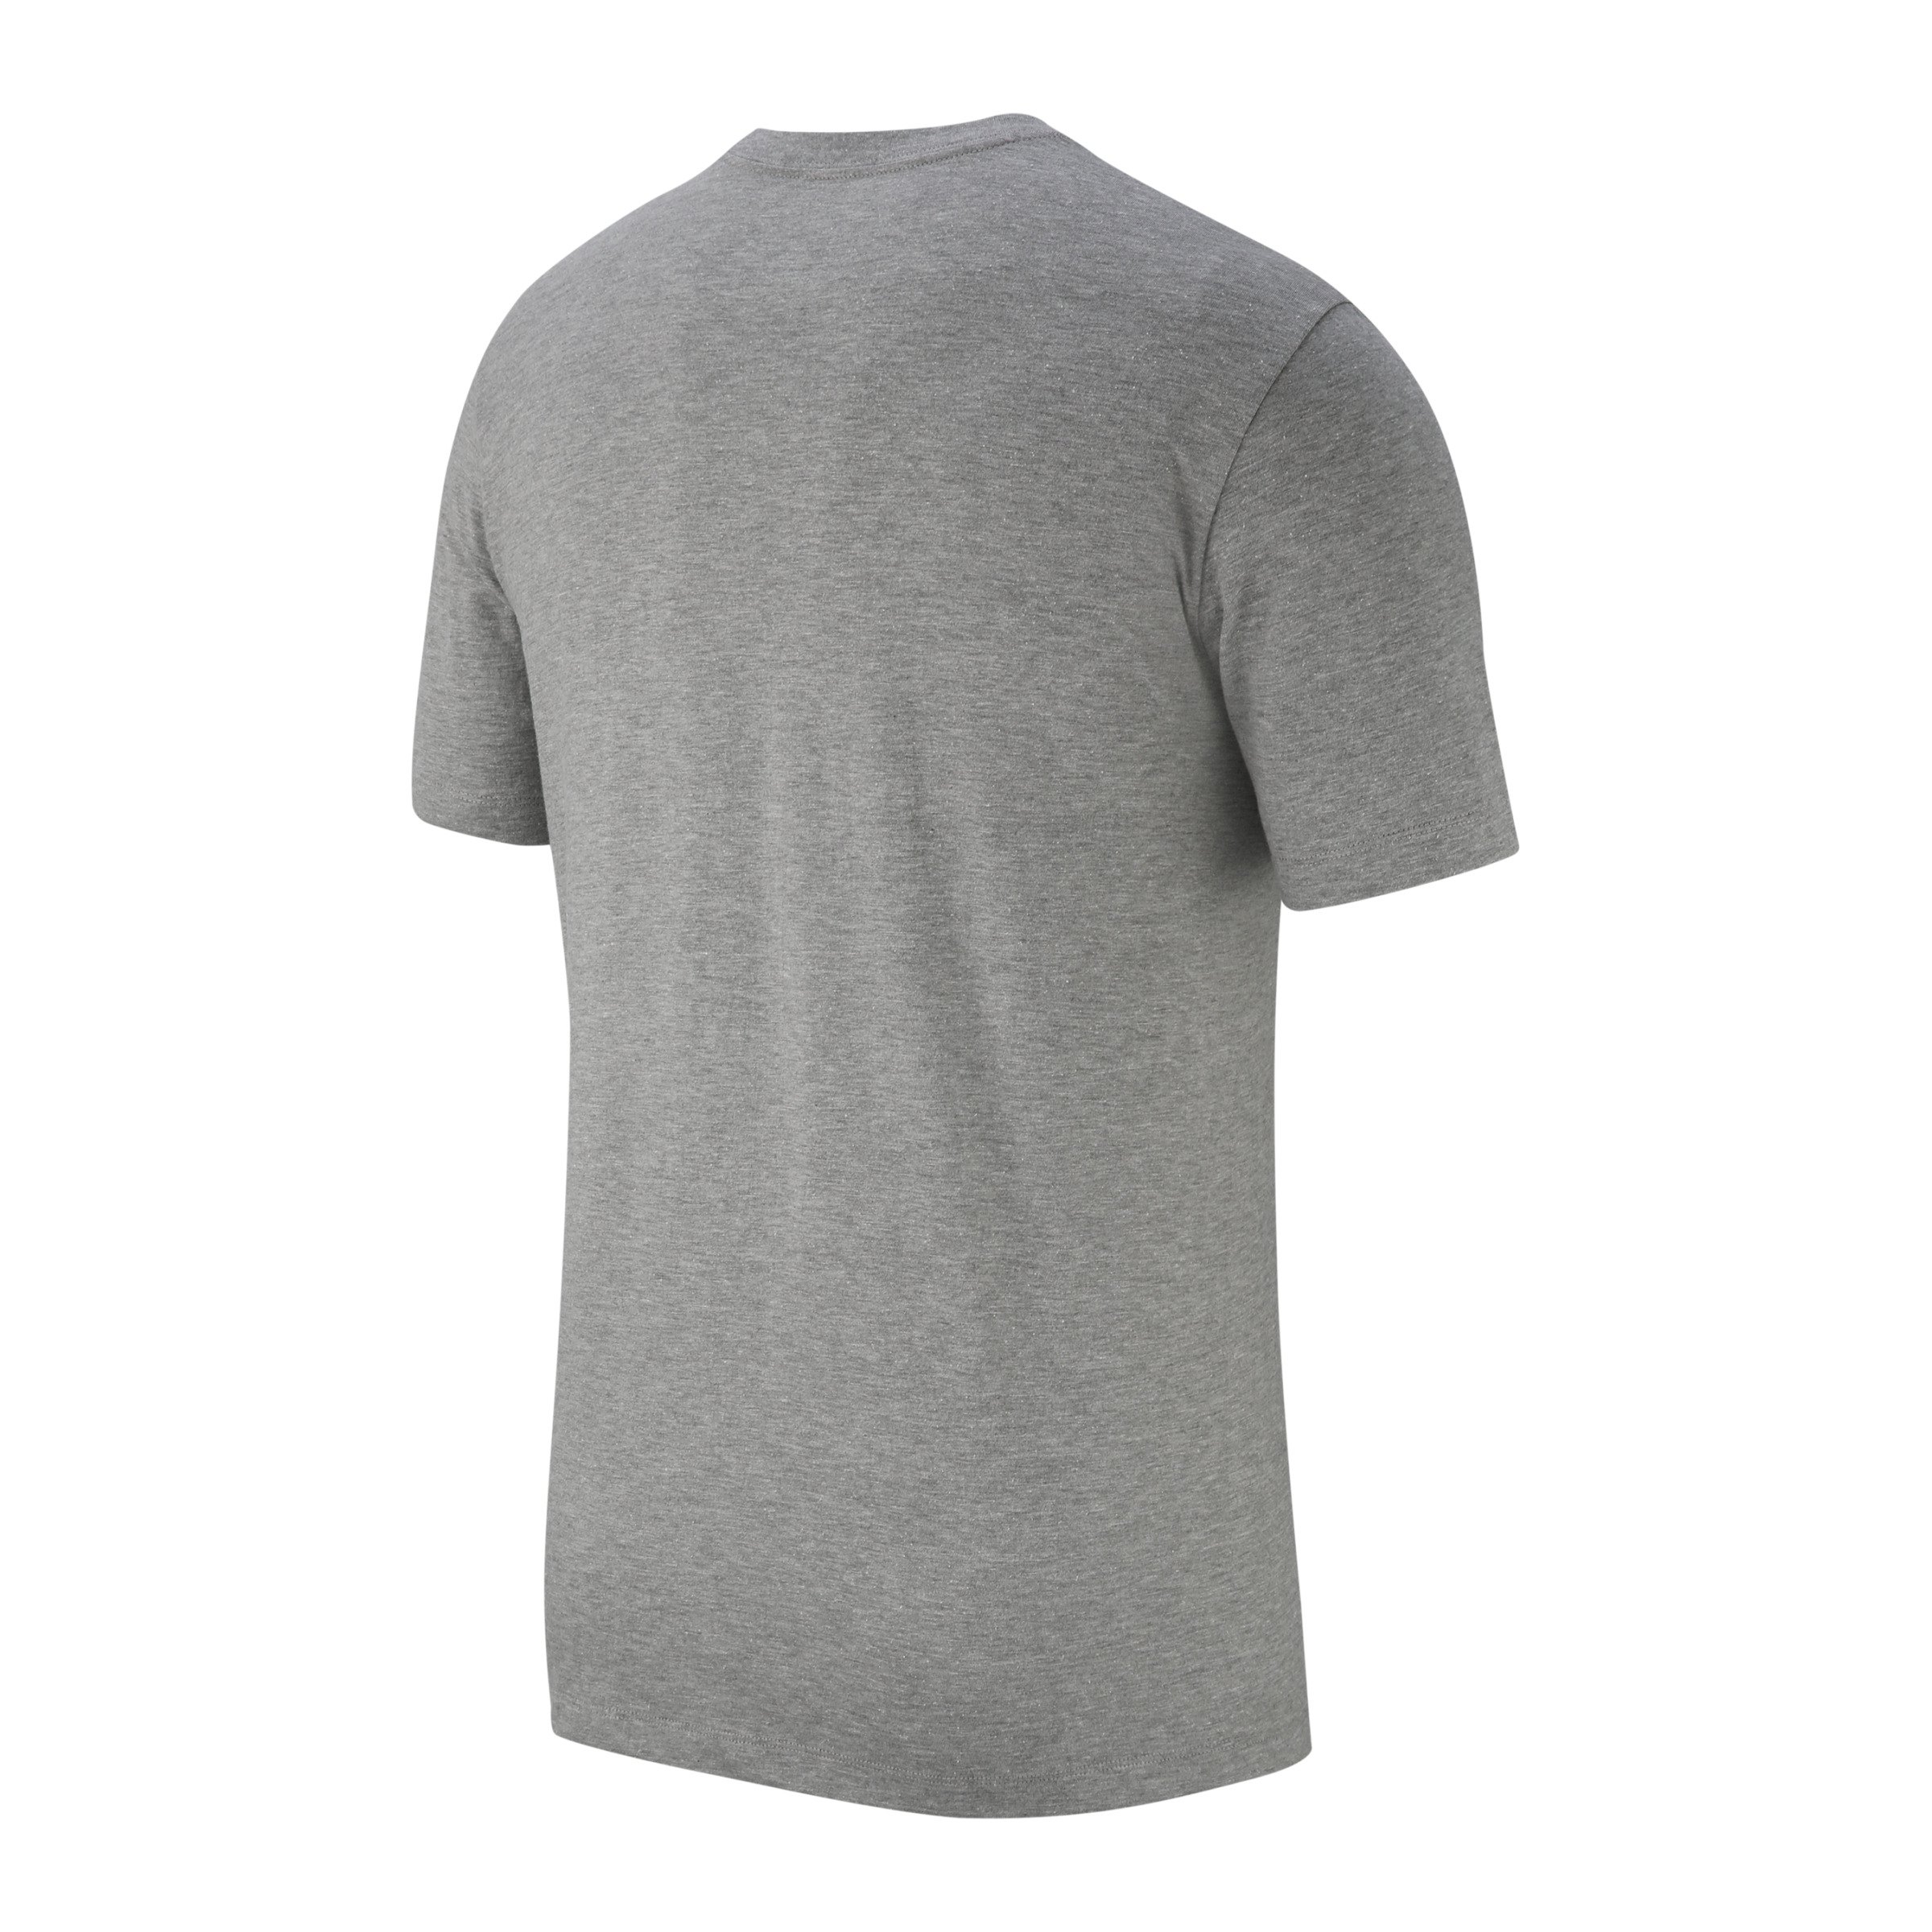 Nike Just Do It Swoosh T-Shirt Grau F063 grau